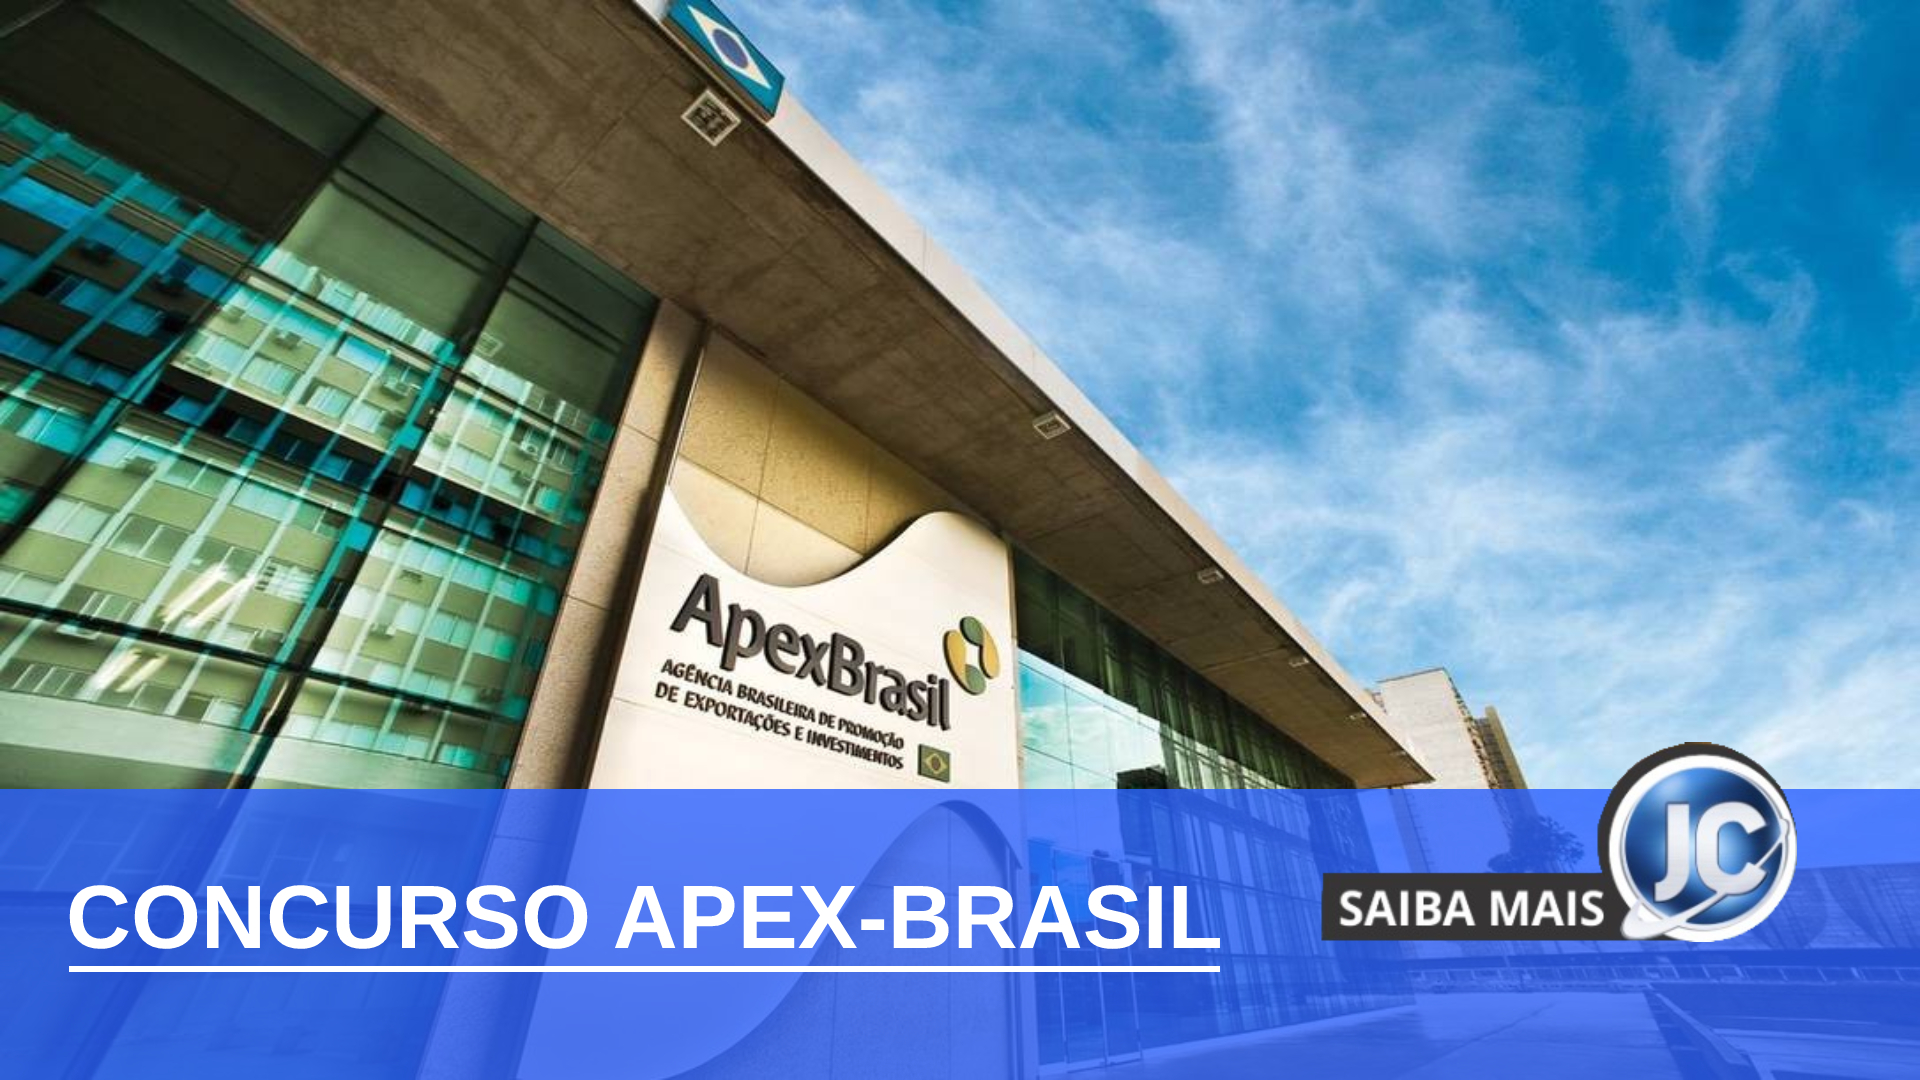 Concurso Apex-Brasil abre inscrições para analista e assistente. Salários  até R$ 7.654,75